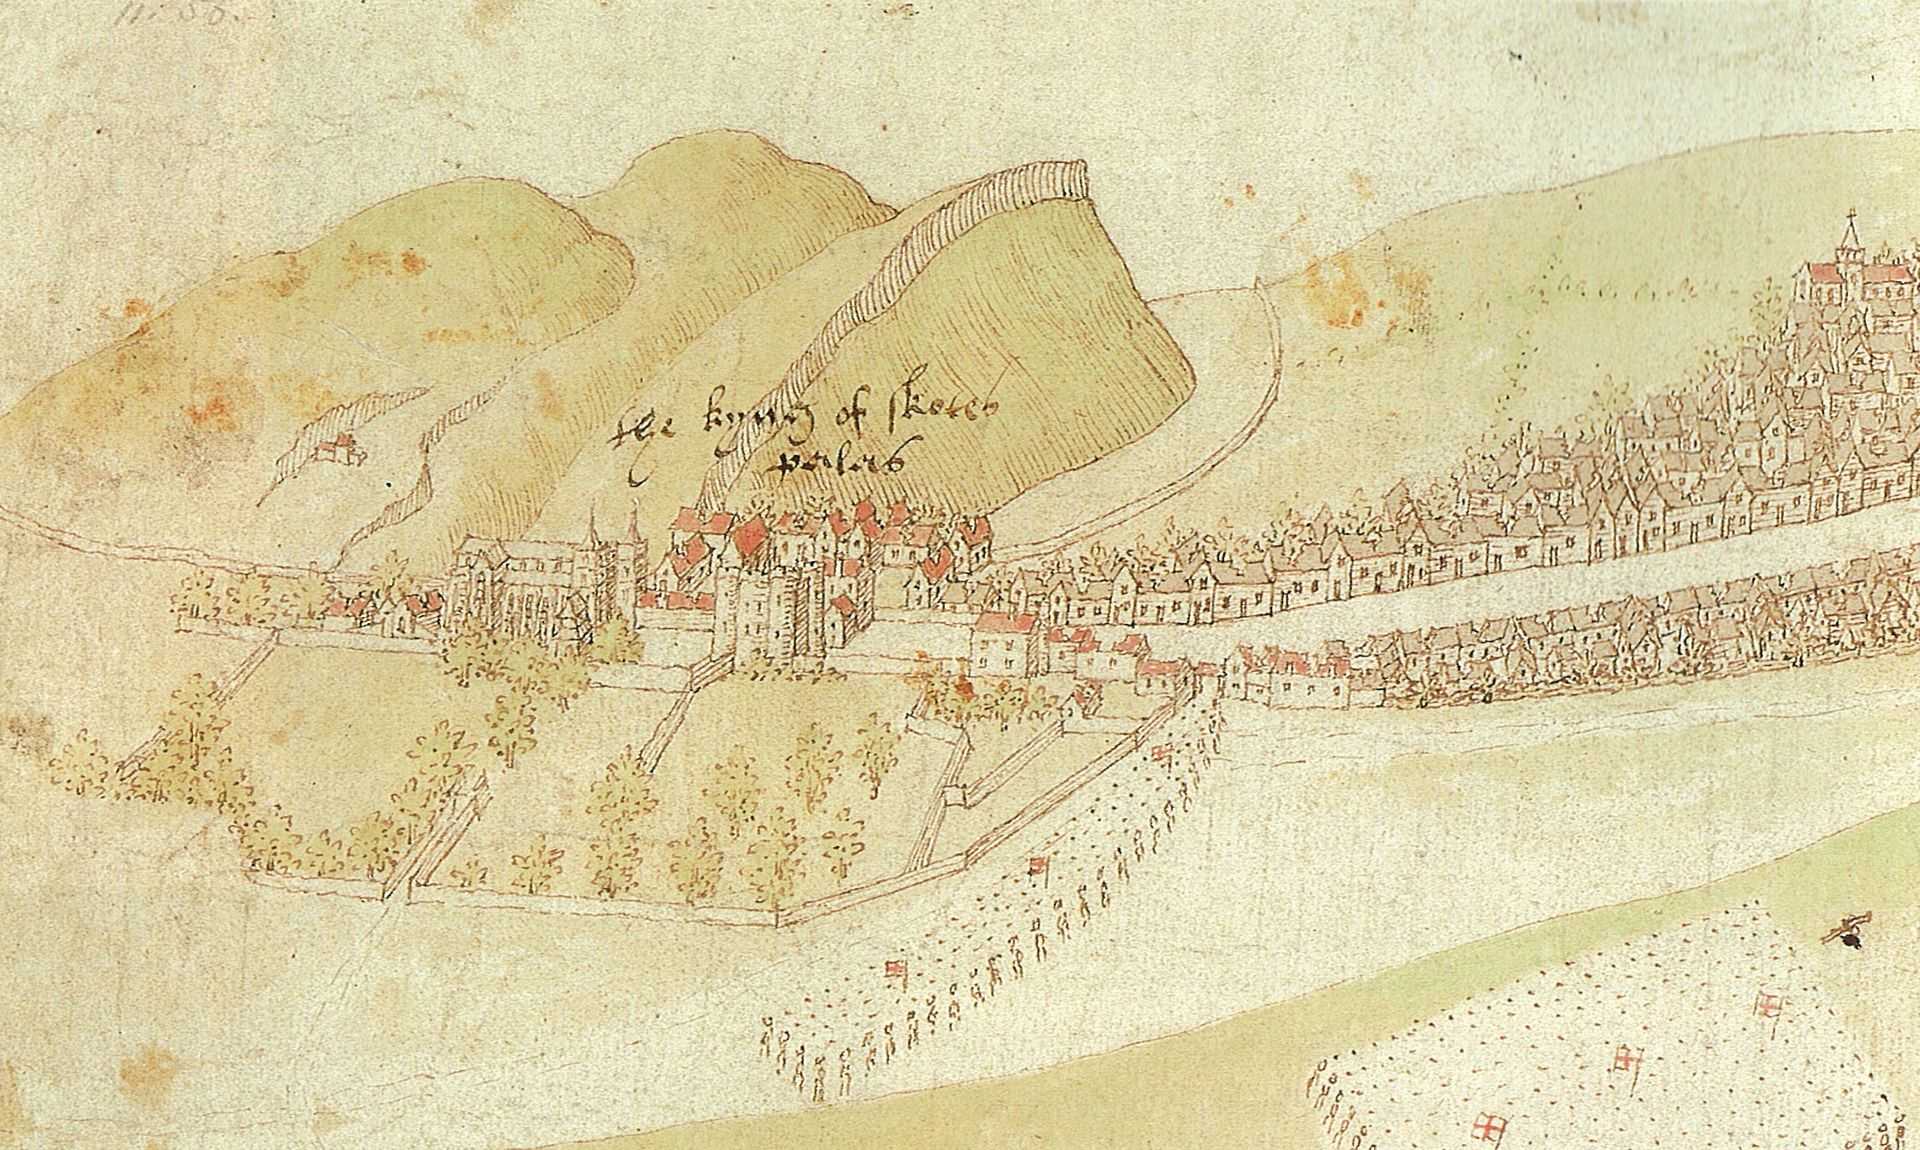 burning of edinburgh 1544